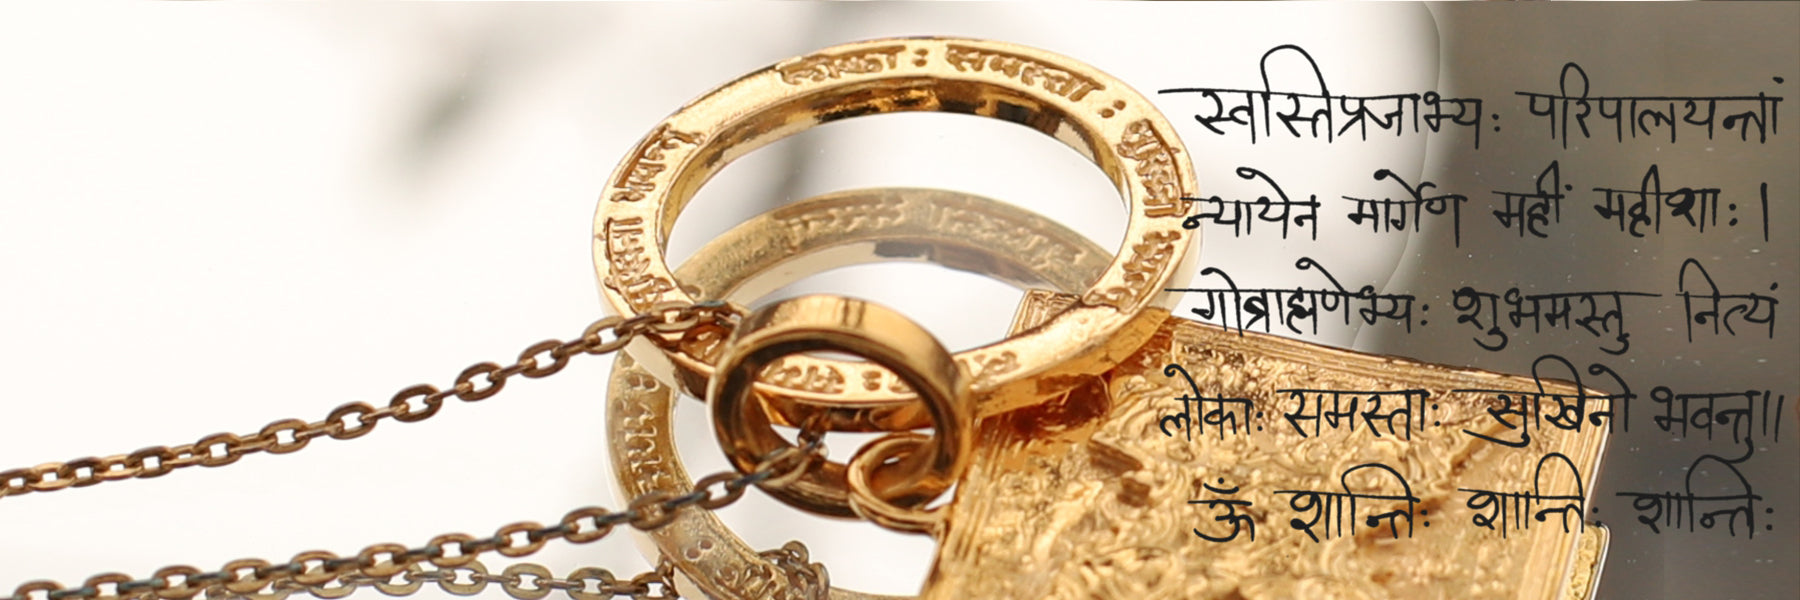 Mangala Mantra Schmuck - Harmonische Anhänger, Ketten, Armbänder und Ohrringe mit dem magischen Mangala Mantra - Mangala mantra jewellery - The Yoga jewellery Collection